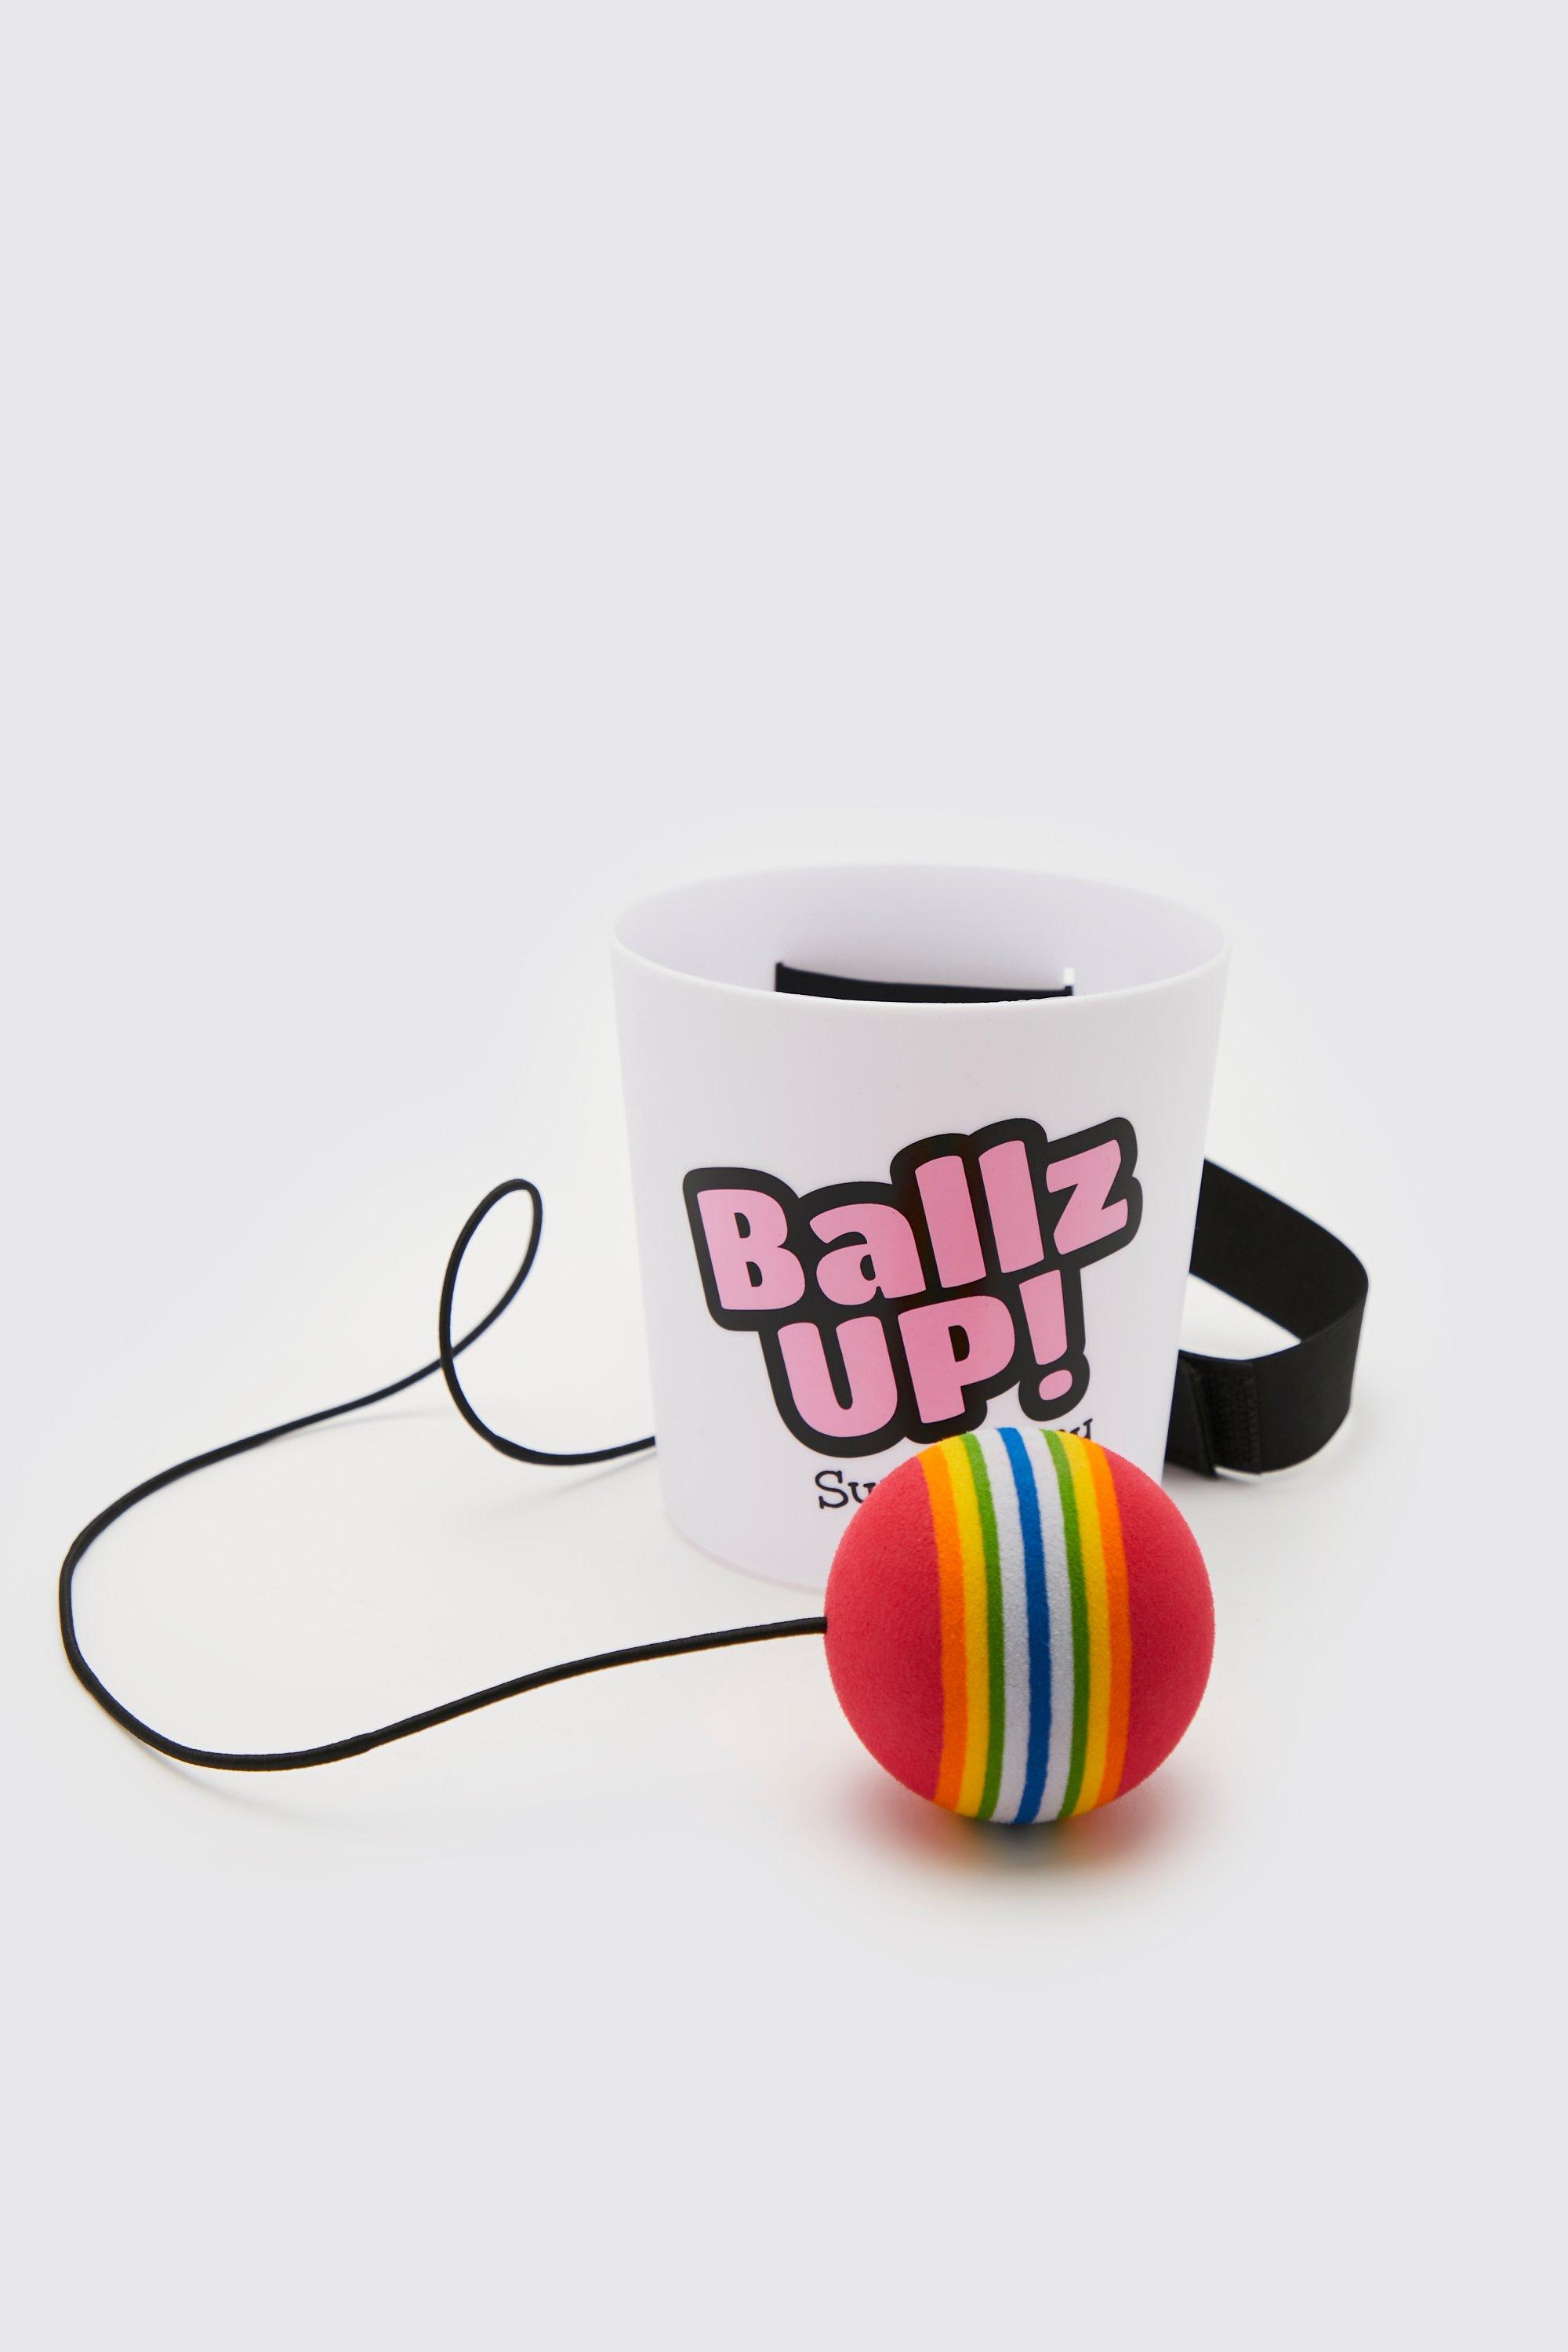 Ballz Up !